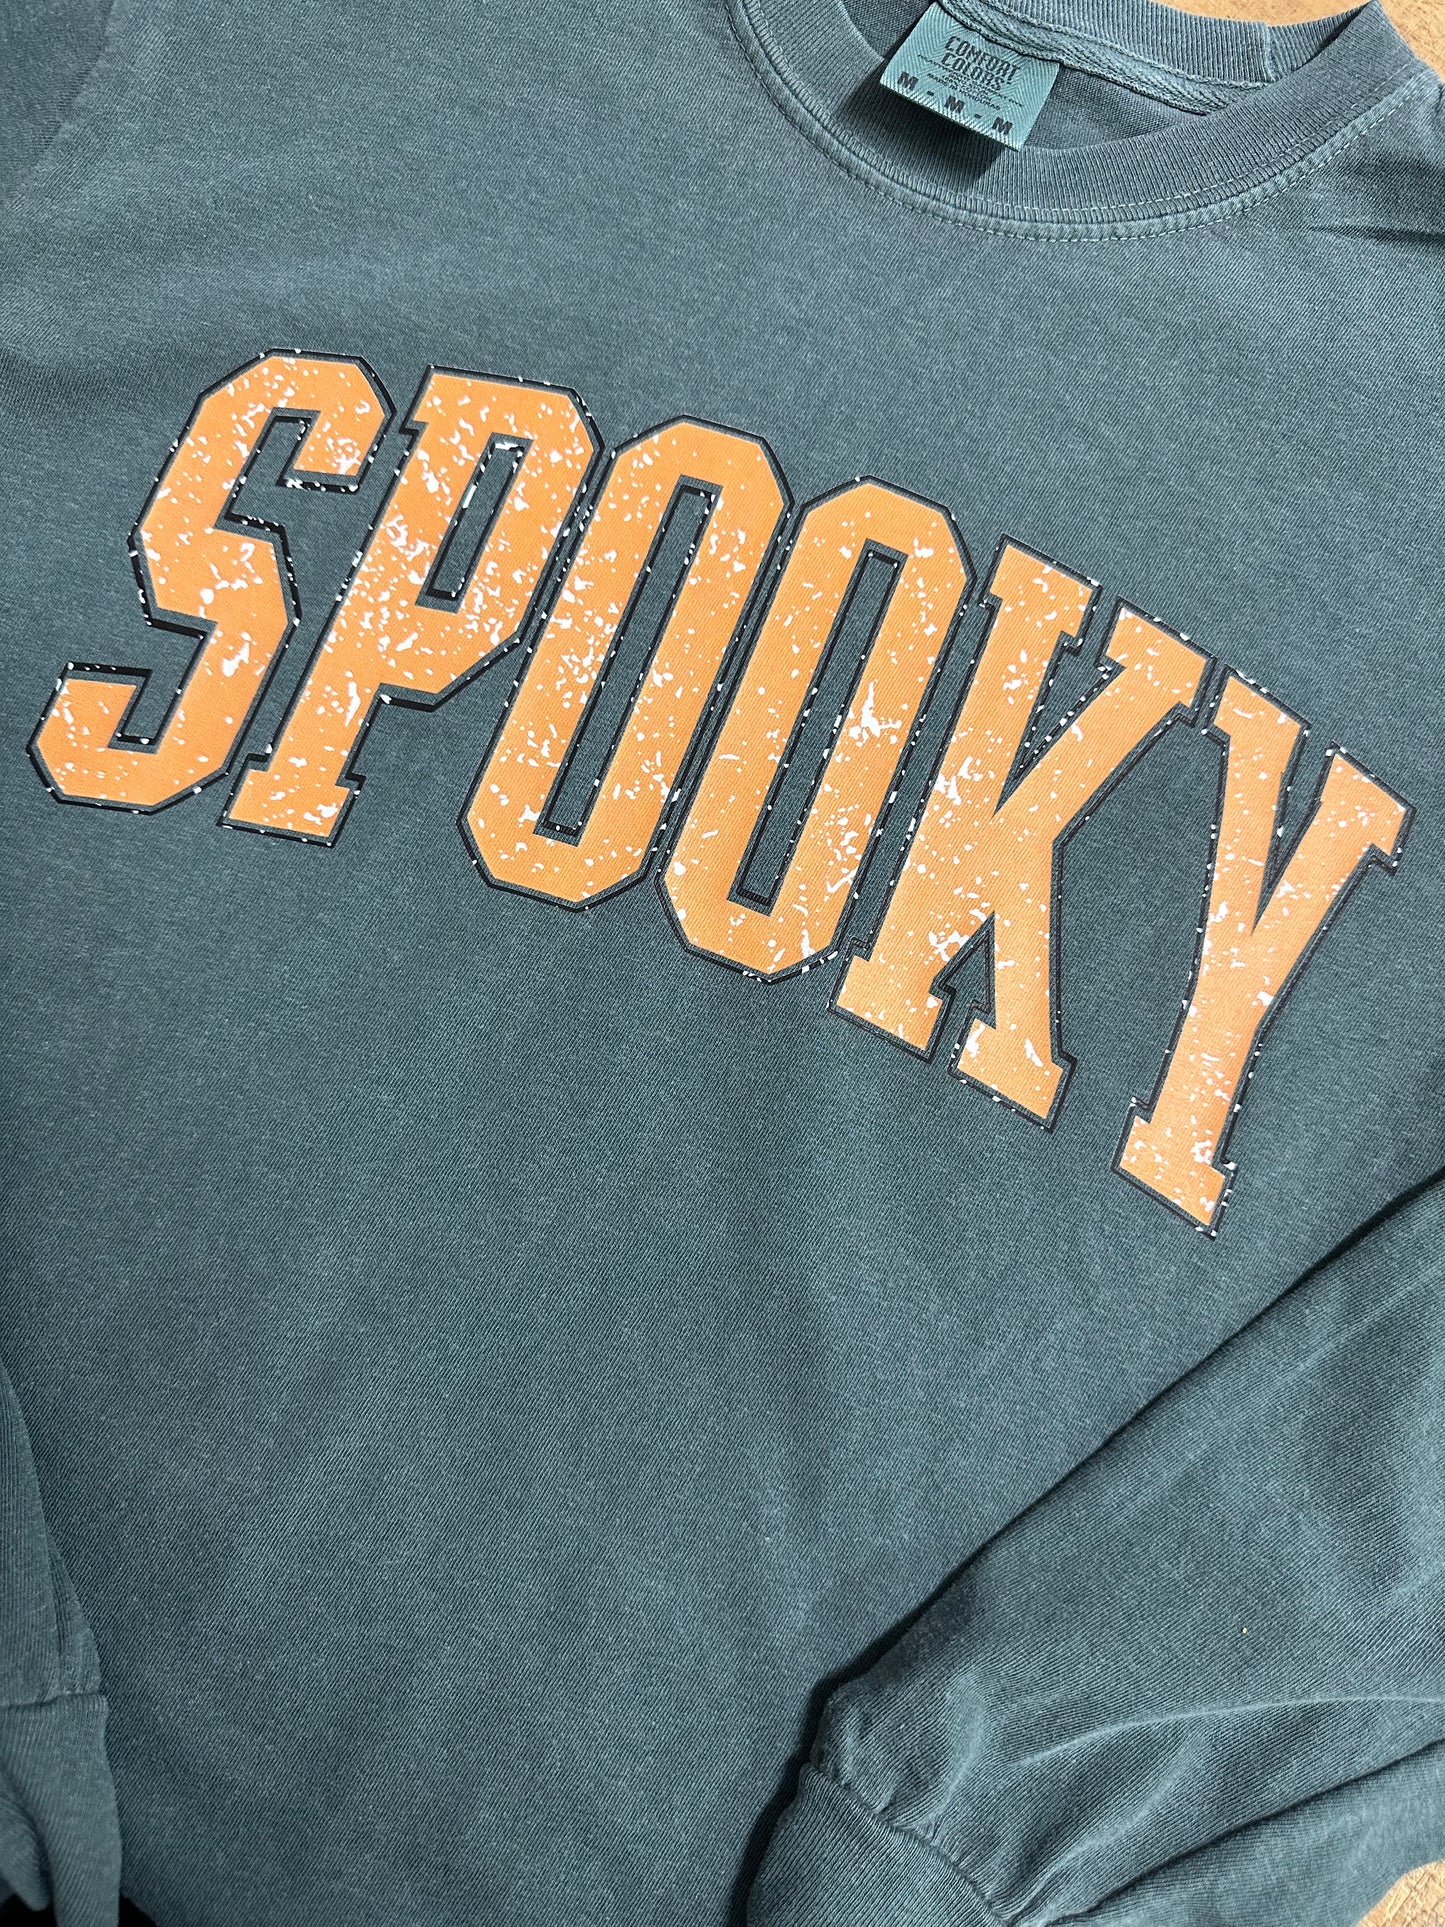 Spooky Comfort Color sweatshirt